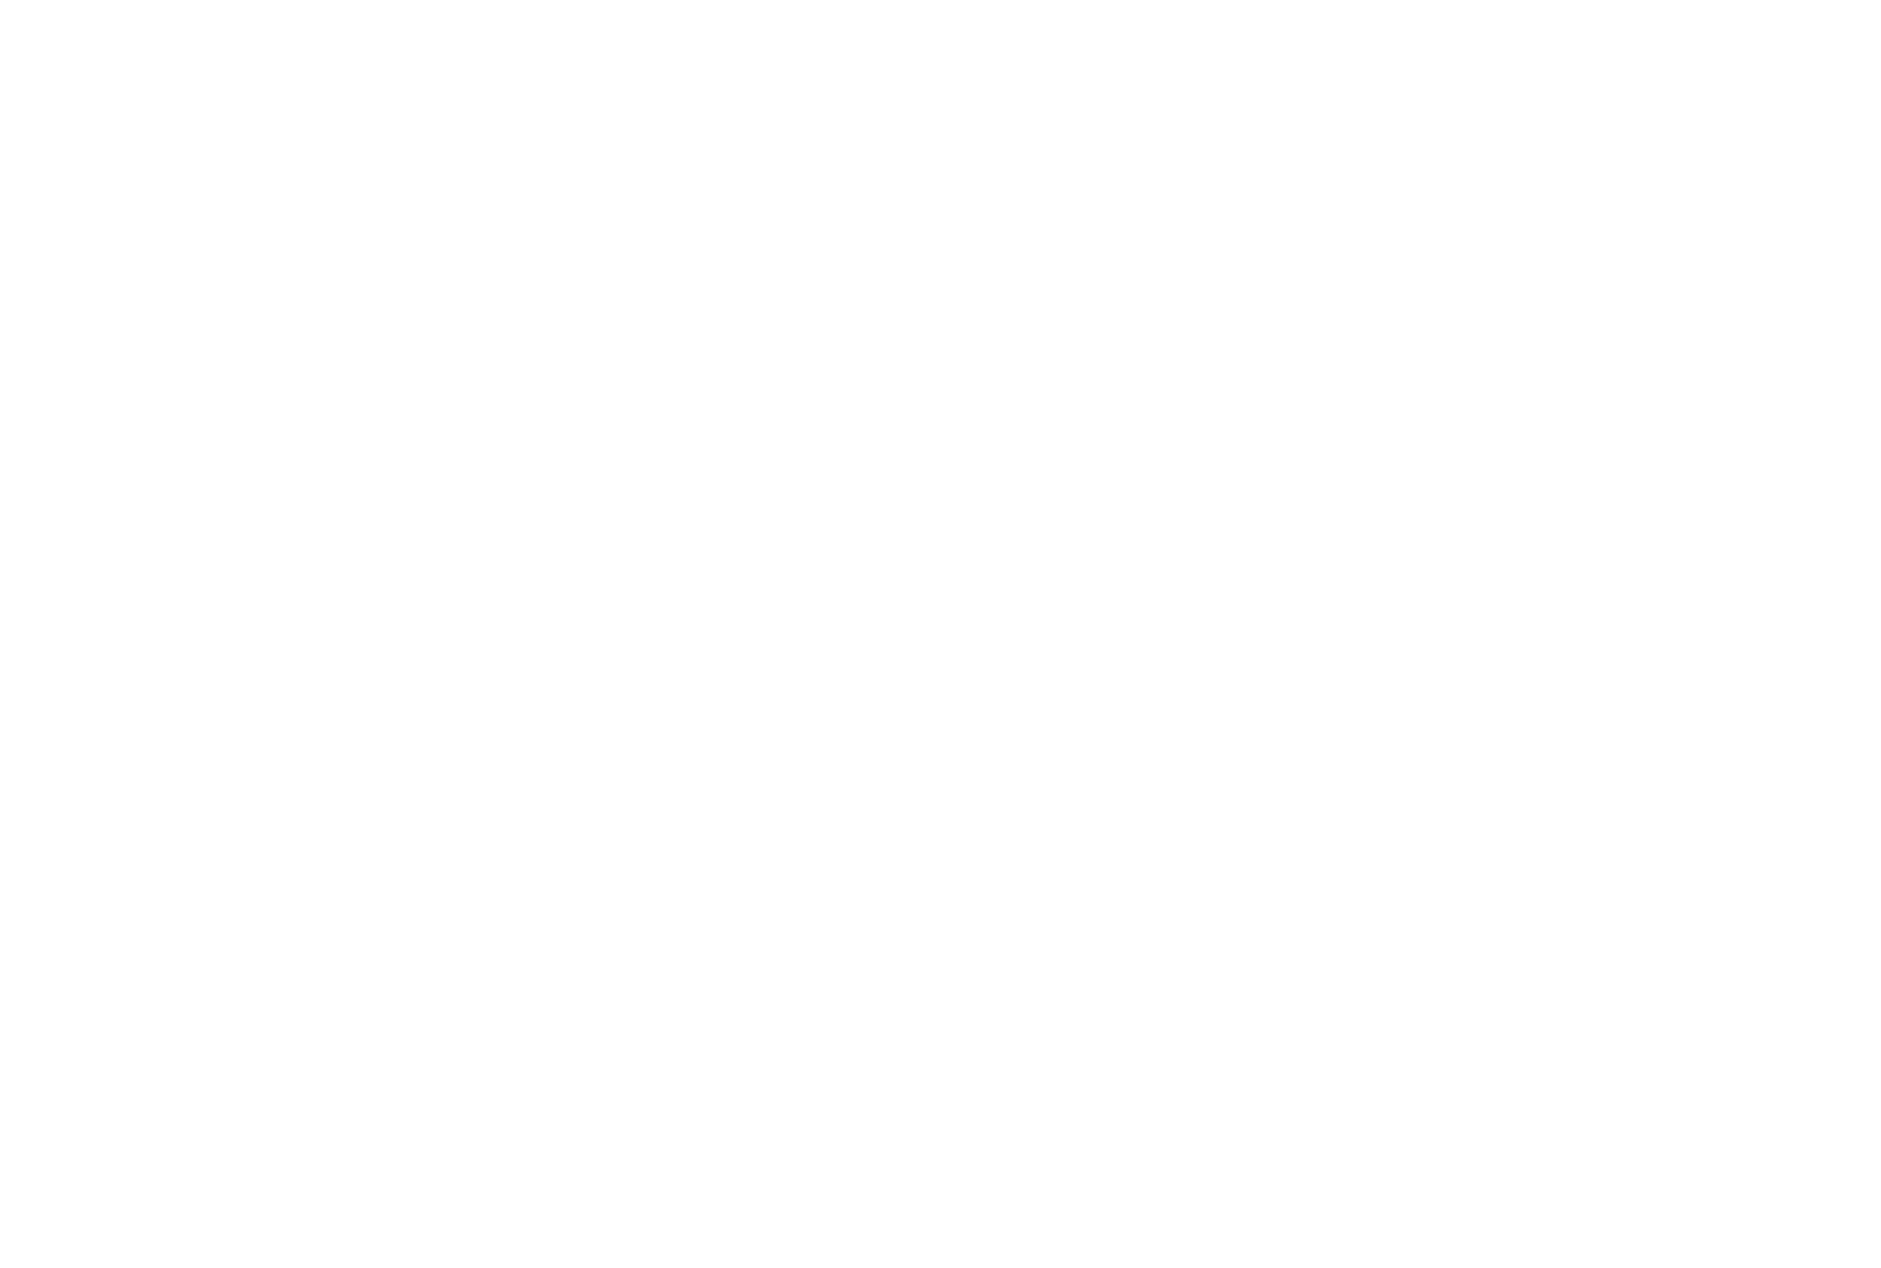 Palmarès Beauté 2023 - The Beauty Awards